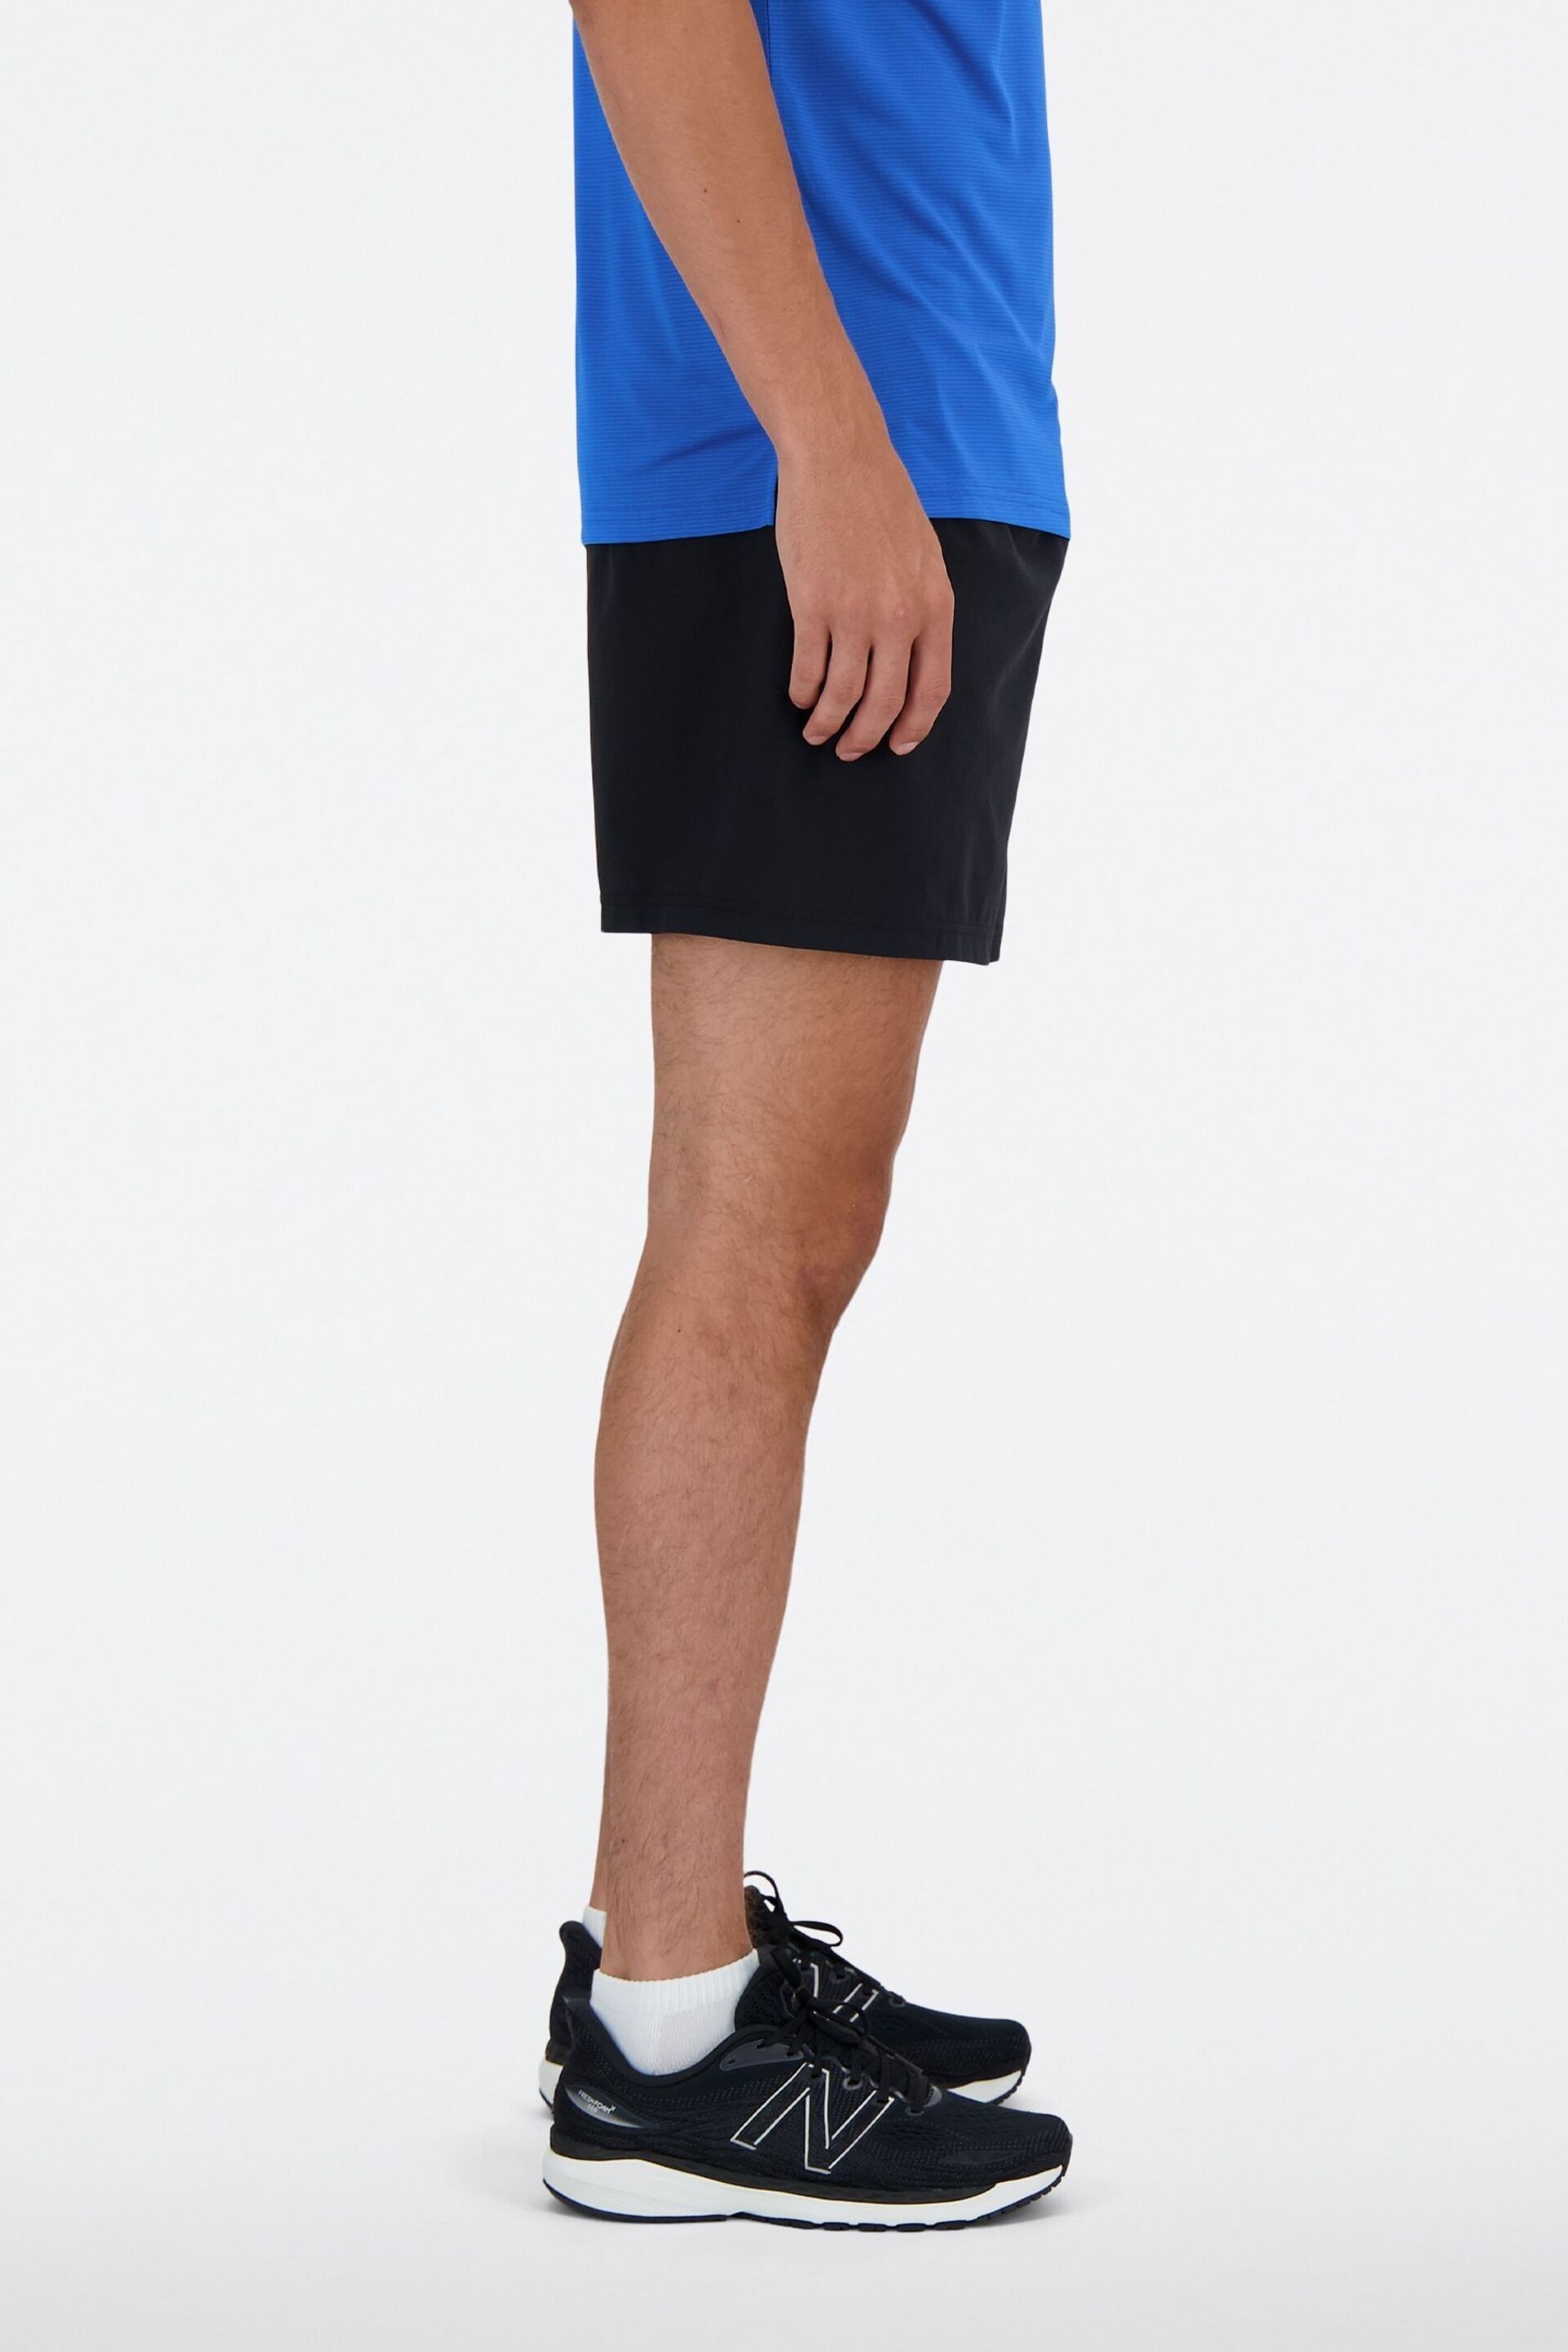 New Balance Blue 5 Inch Shorts - Image 5 of 8